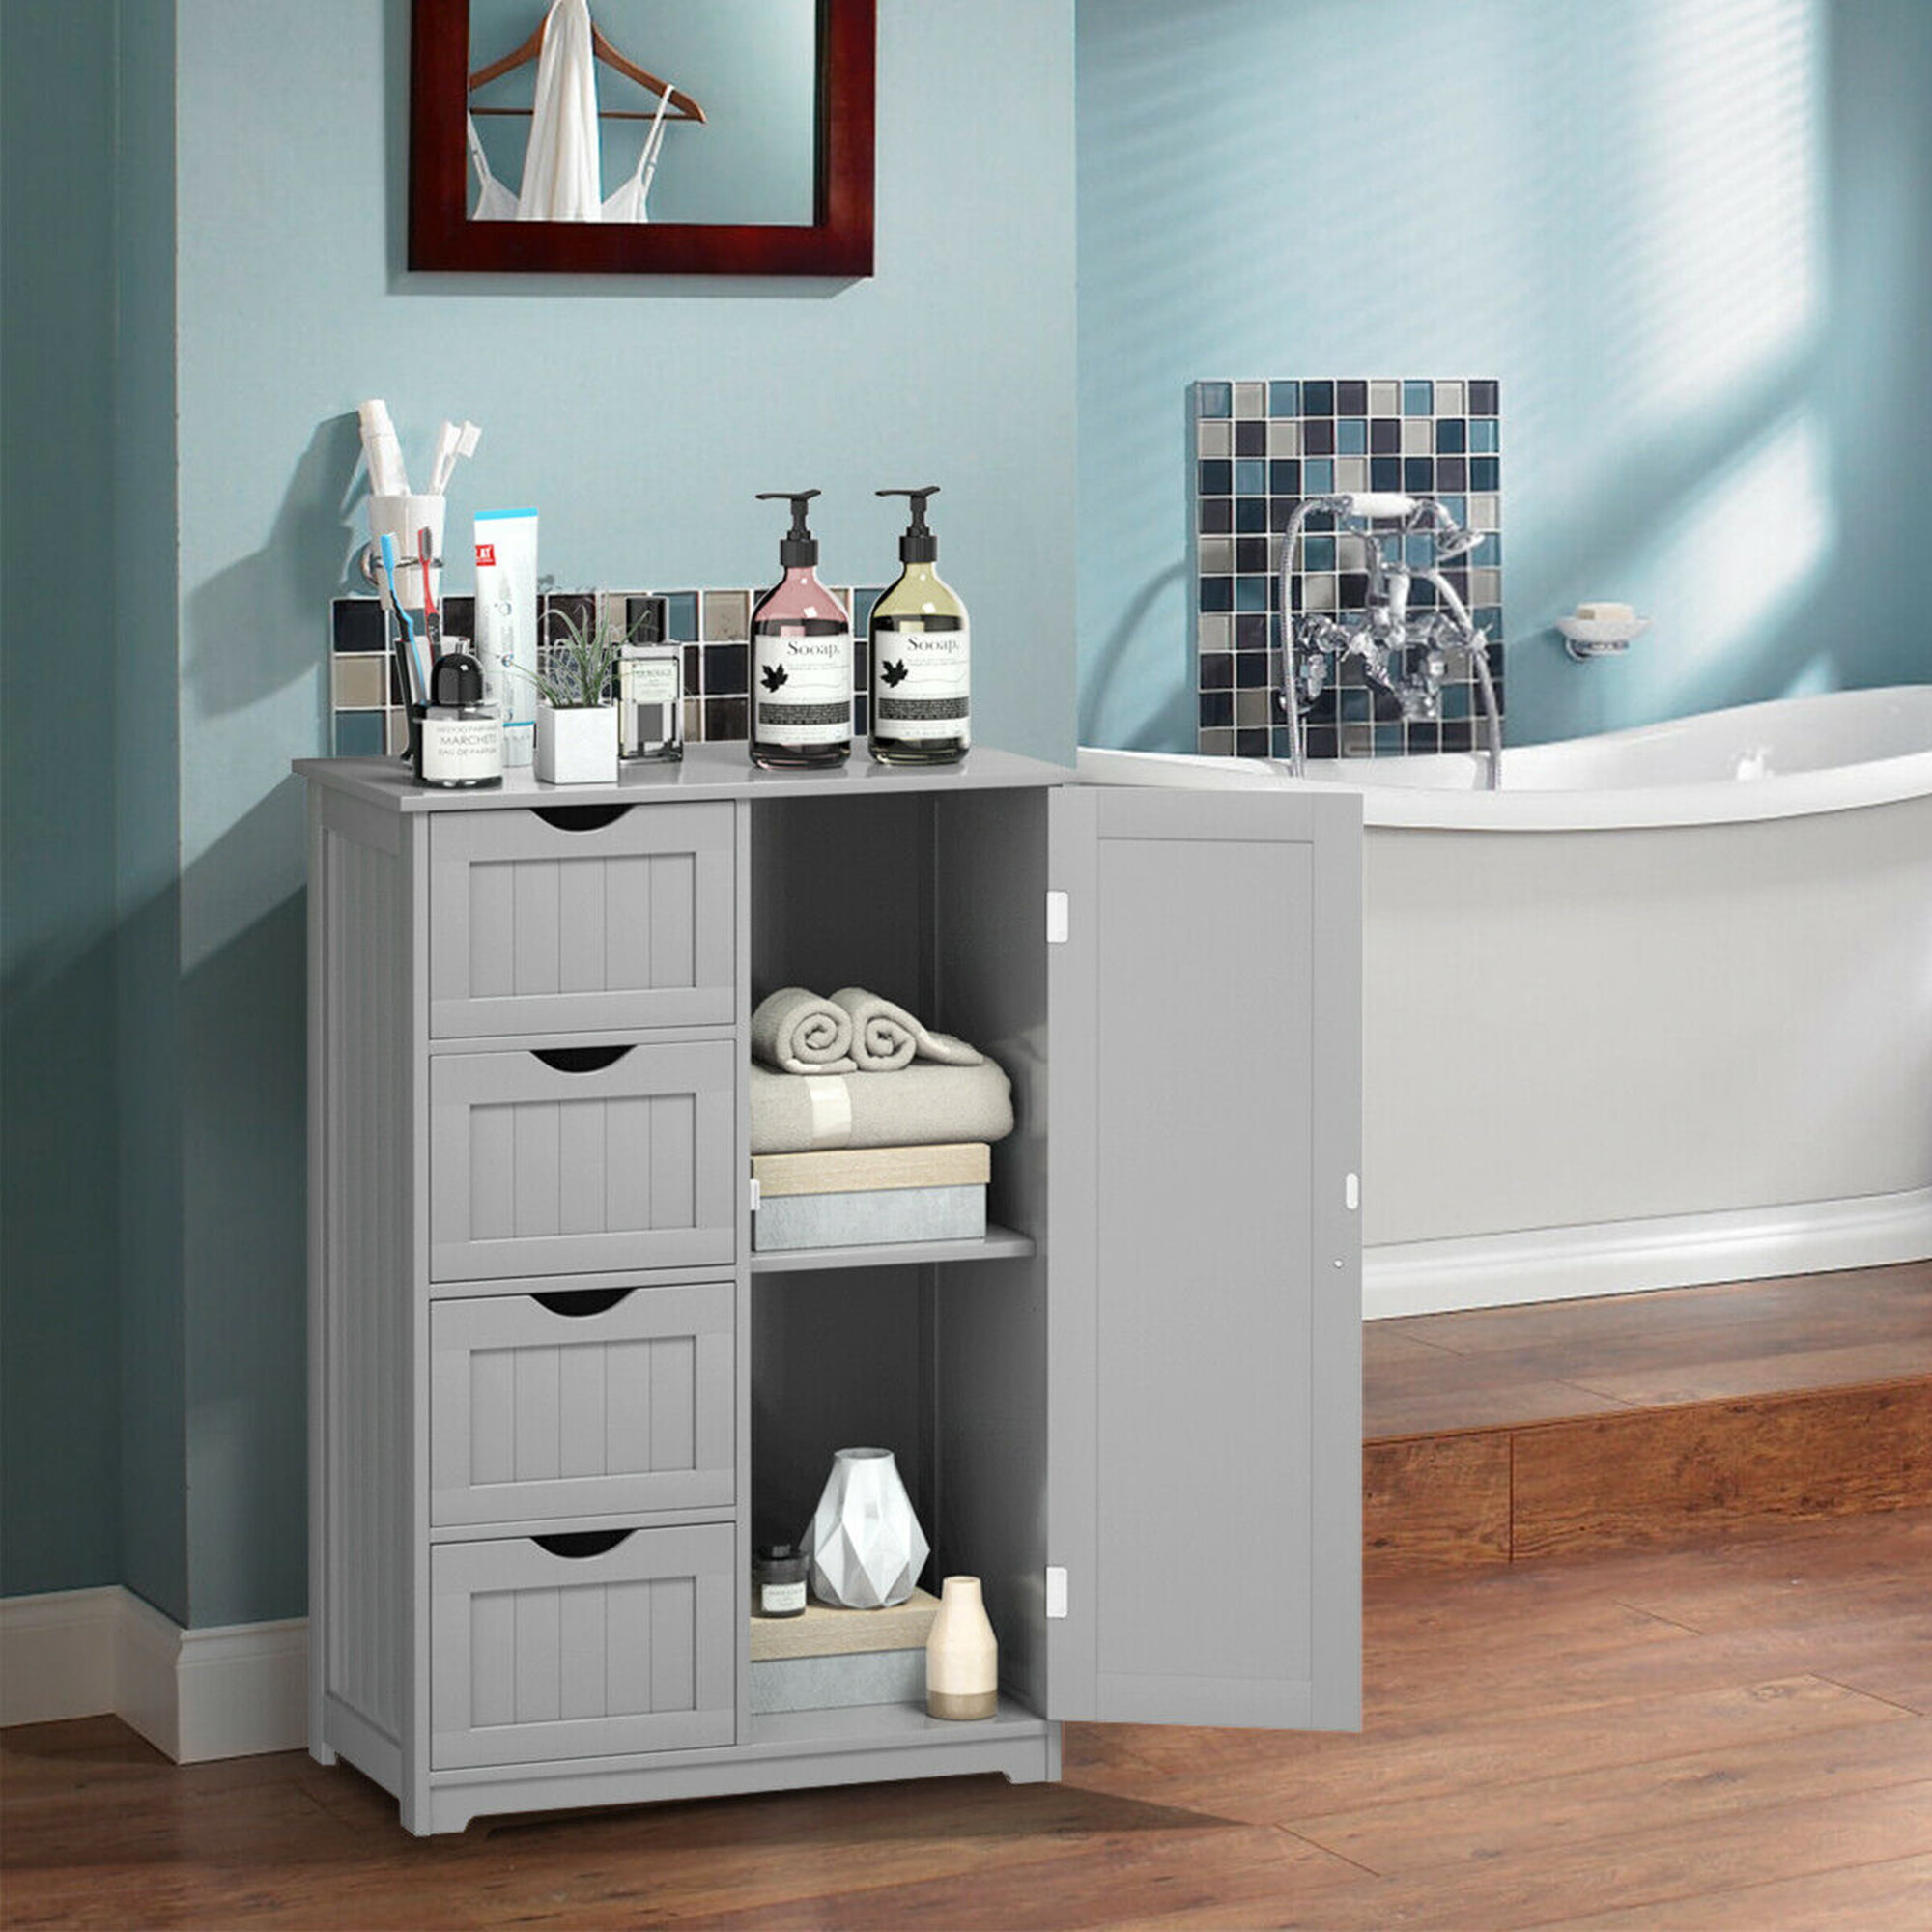 Gymax Bathroom Floor Cabinet Storage Organizer Cupboard w/ 4 Drawers Adjustable Shelf Grey - image 2 of 10